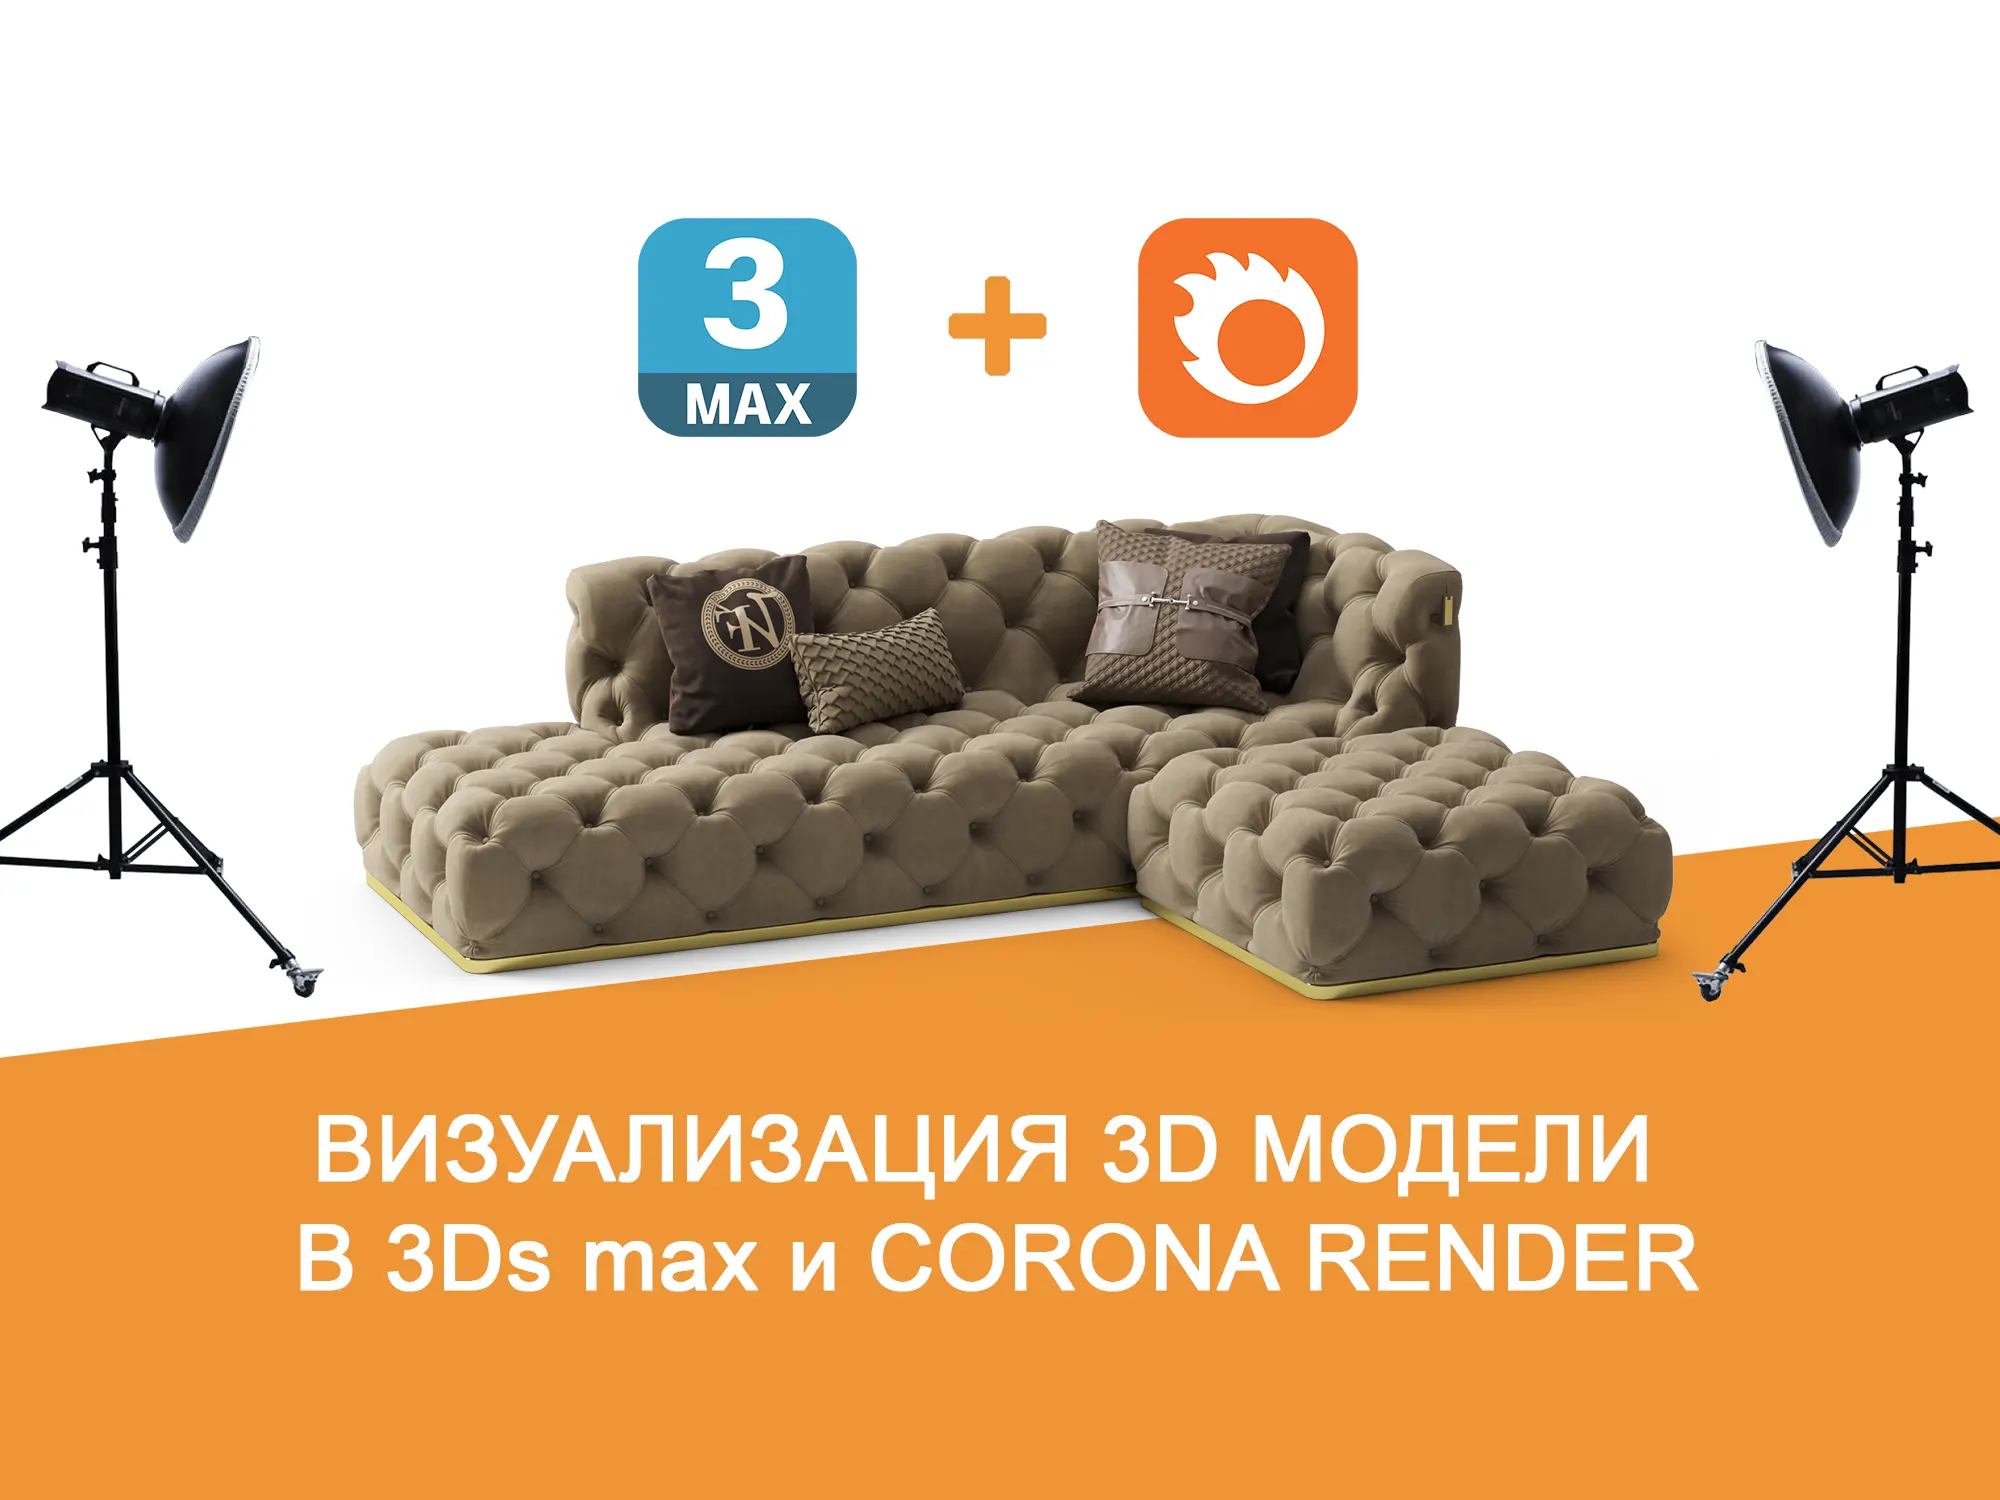 Визуализация 3D модели в 3ds max и CoronaRender